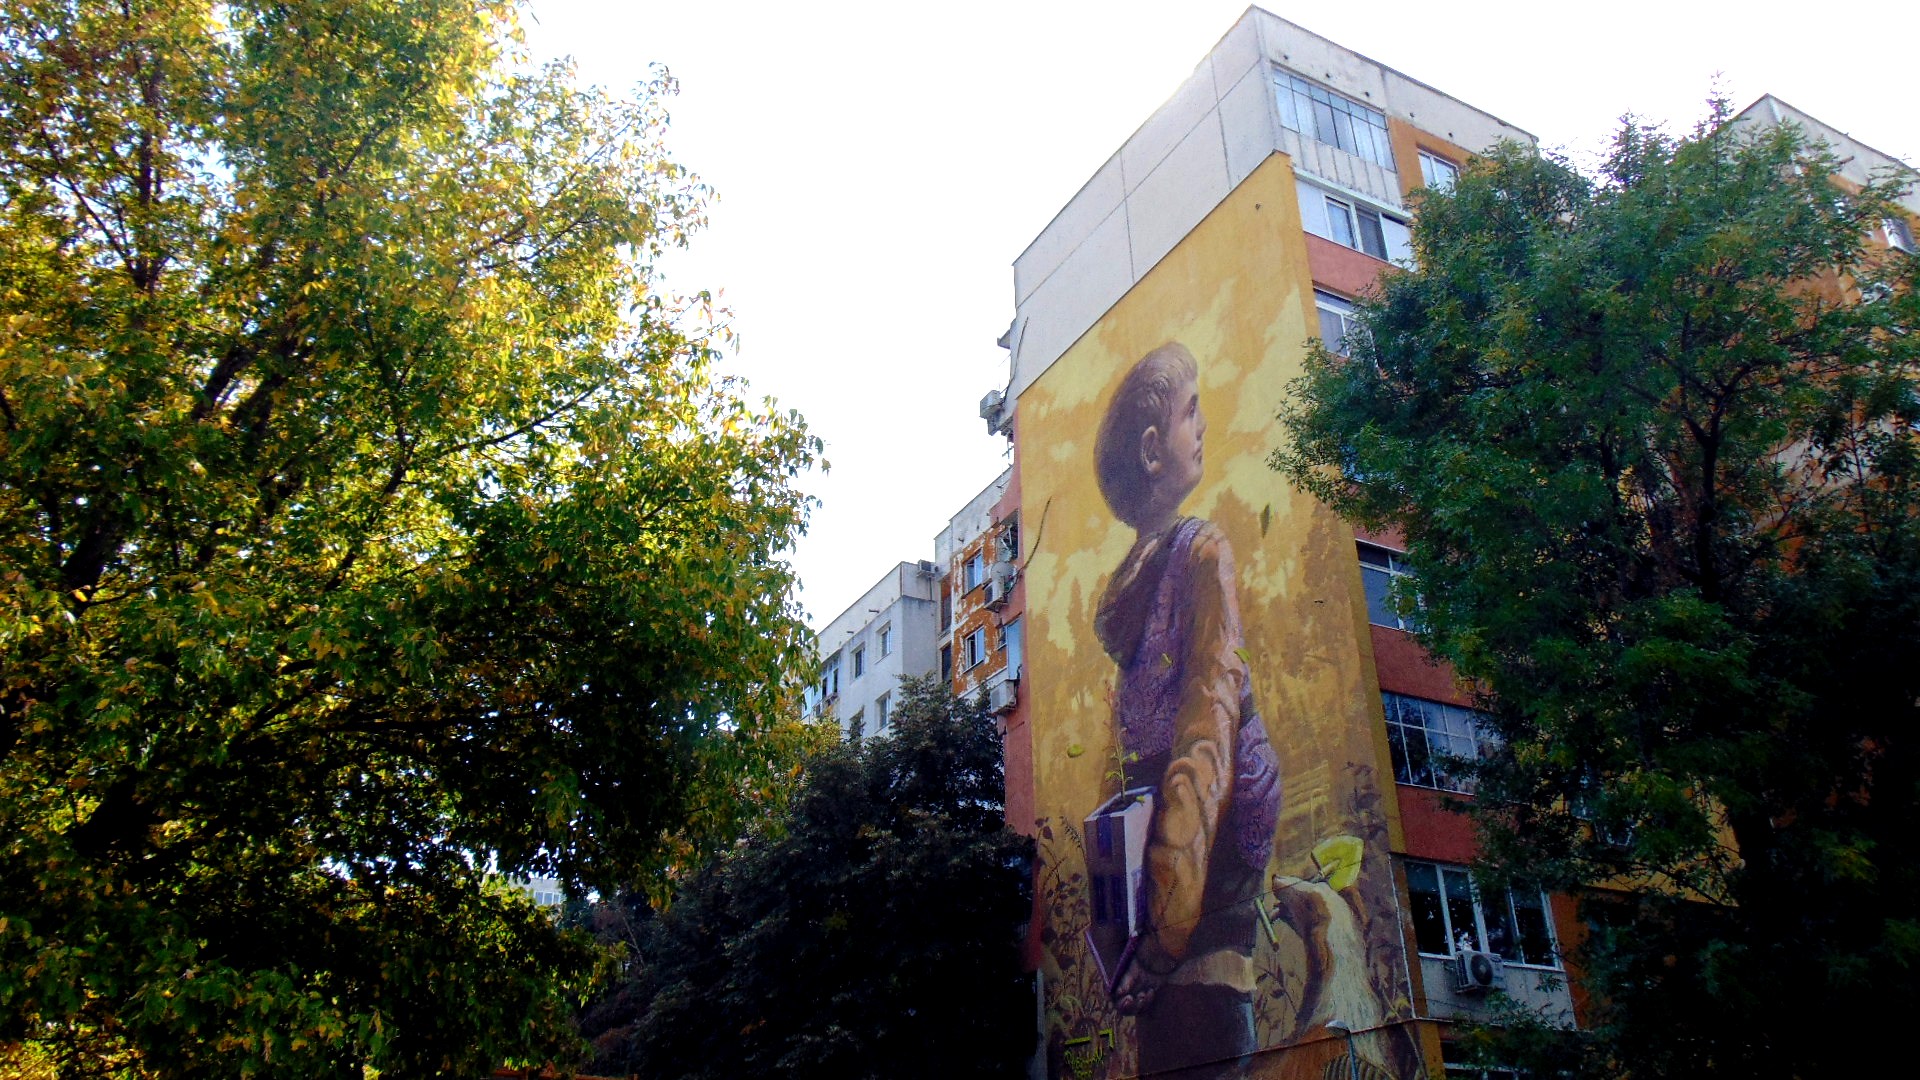 Фестивалът ONE ARCHITECTURE в Пловдив показва на живо как може да се промени панелната среда, а калканът на панелен блок в пловдивския квартал "Тракия" бе изрисуван от младежи в рамките на Арт стрийт фестивал